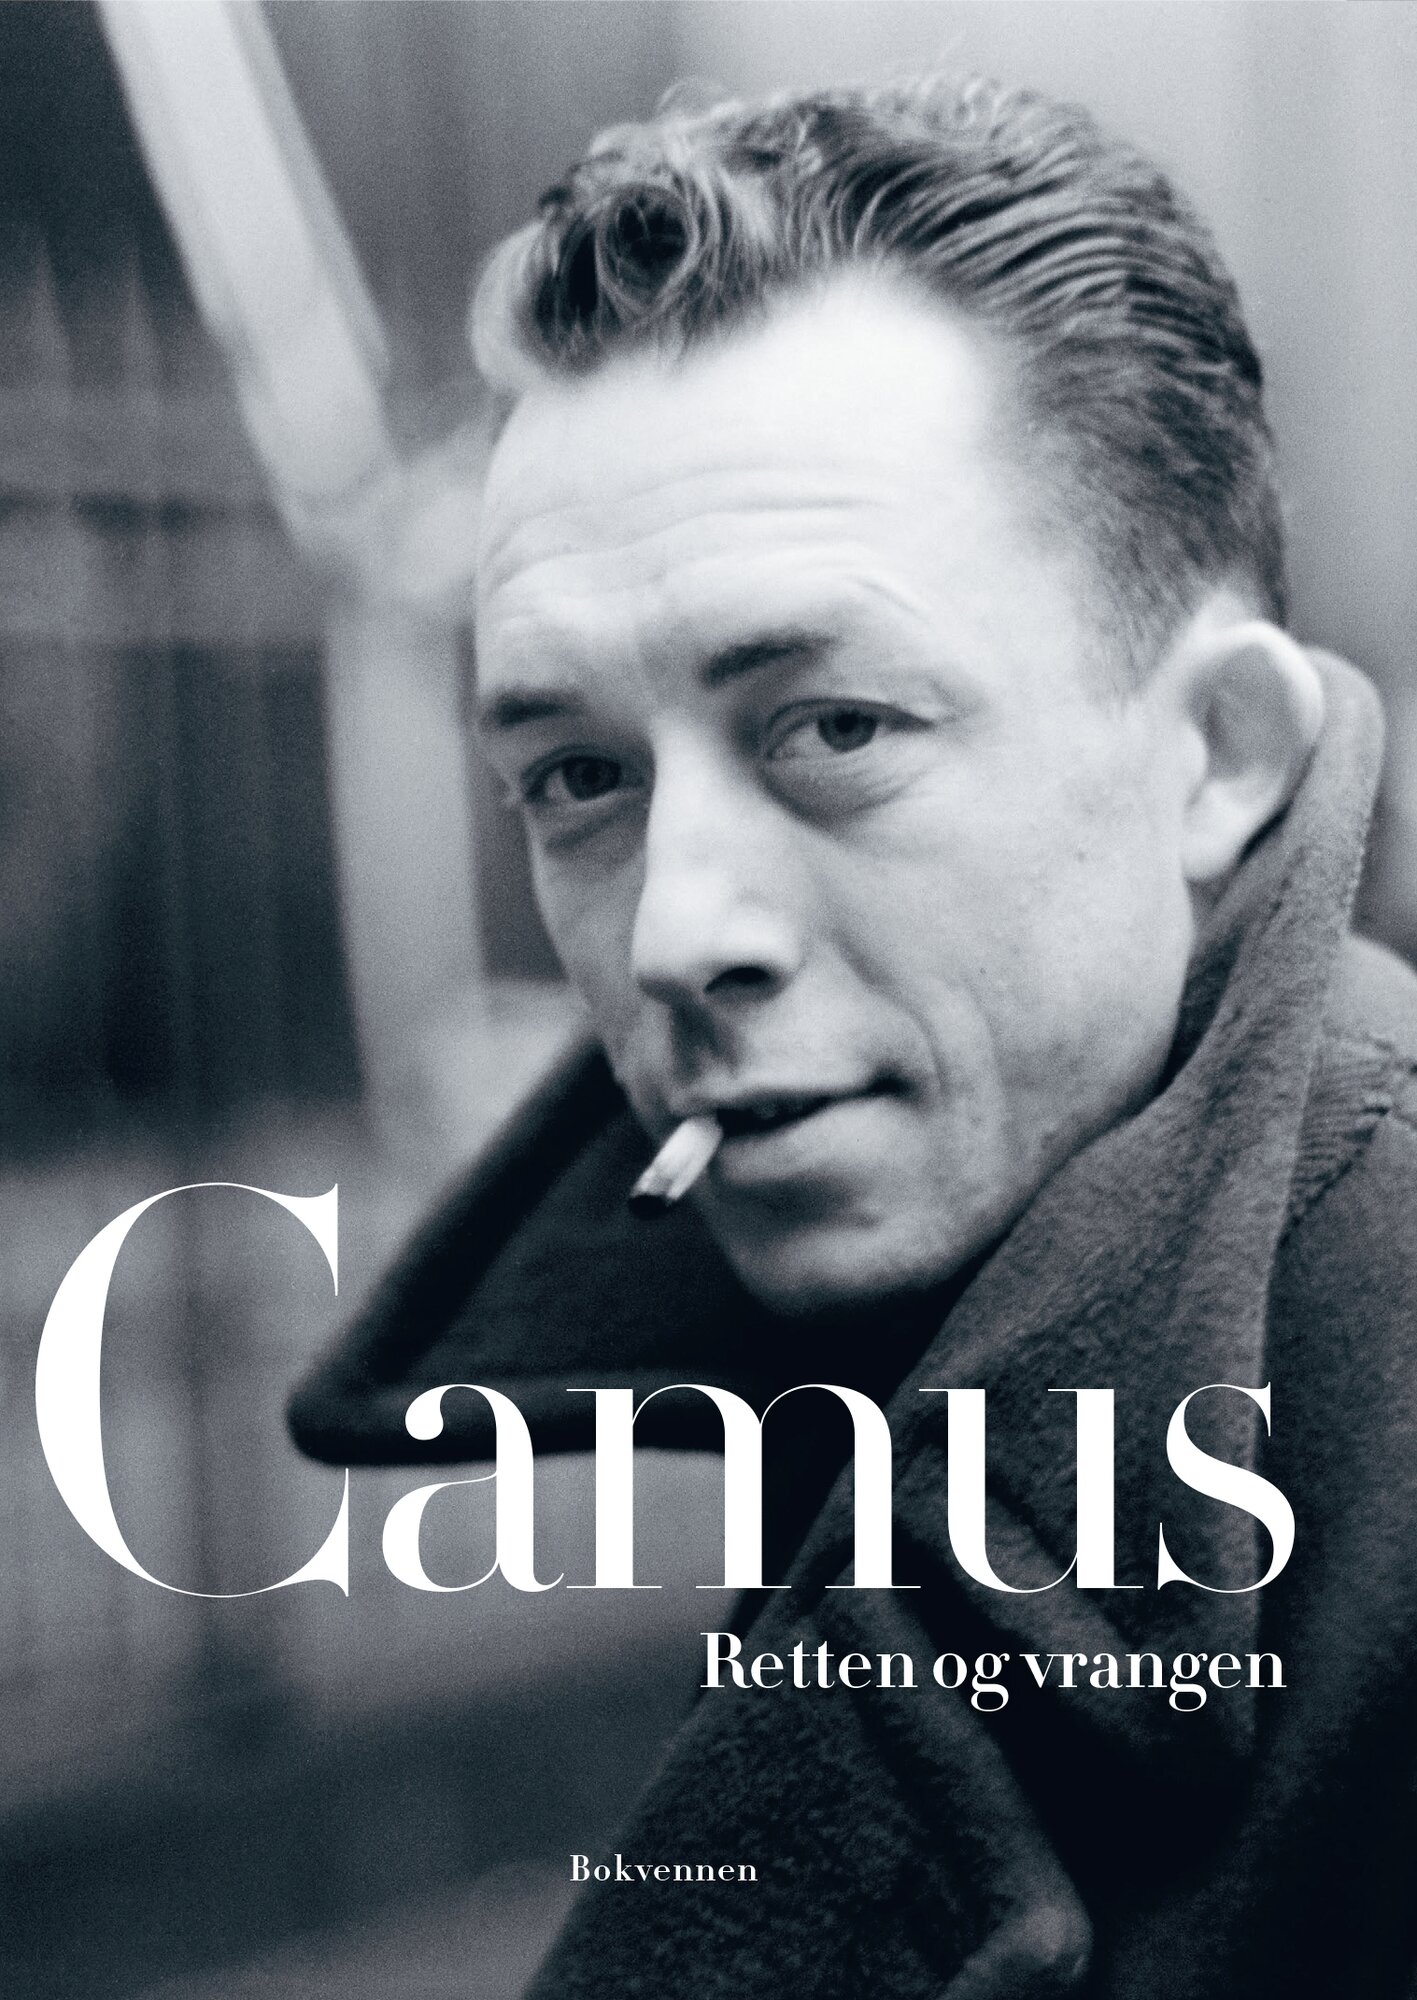 Camus vrangen ny